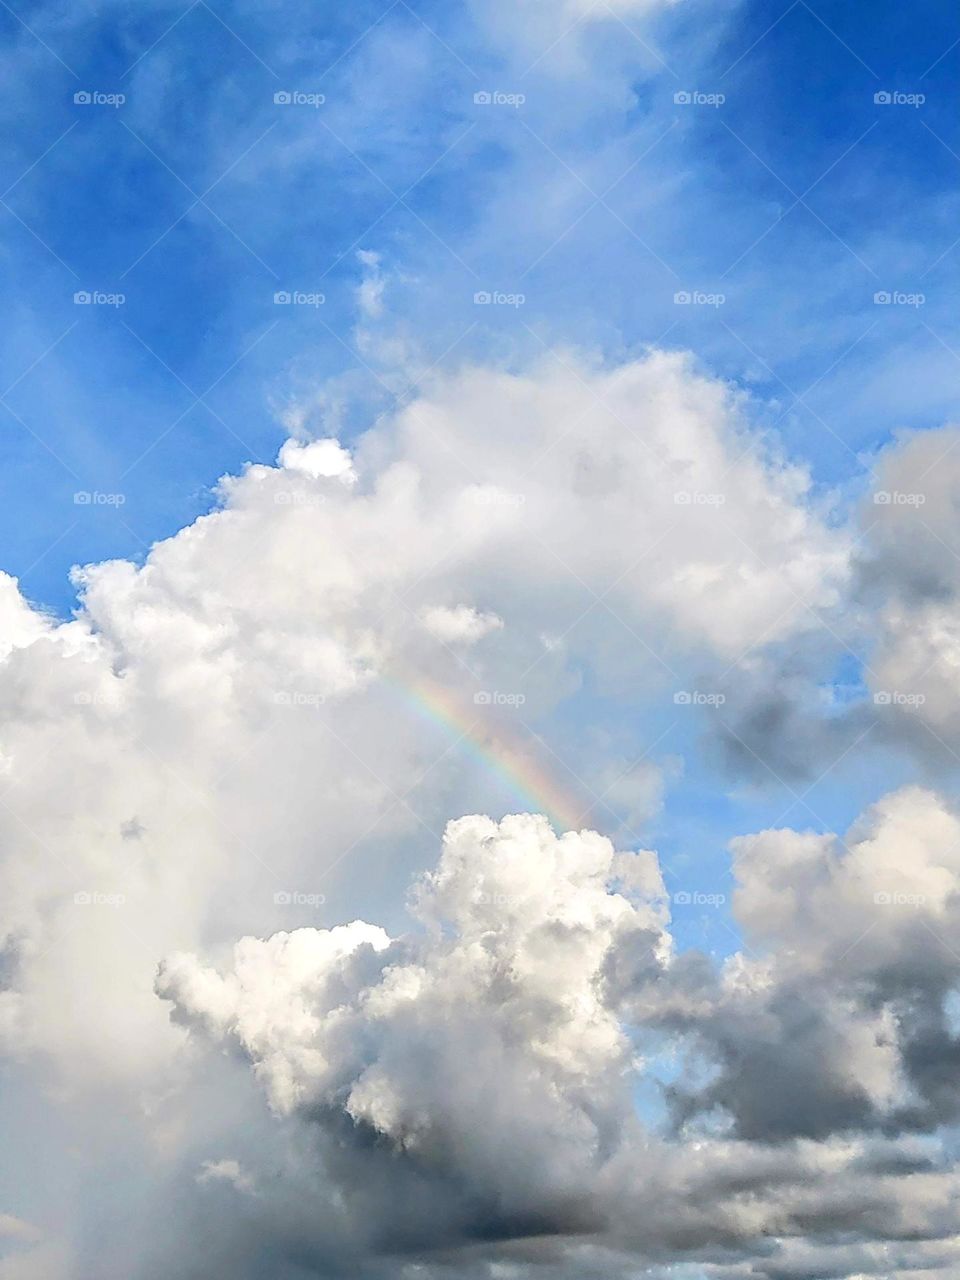 Cloud, rainbow and the blue sky